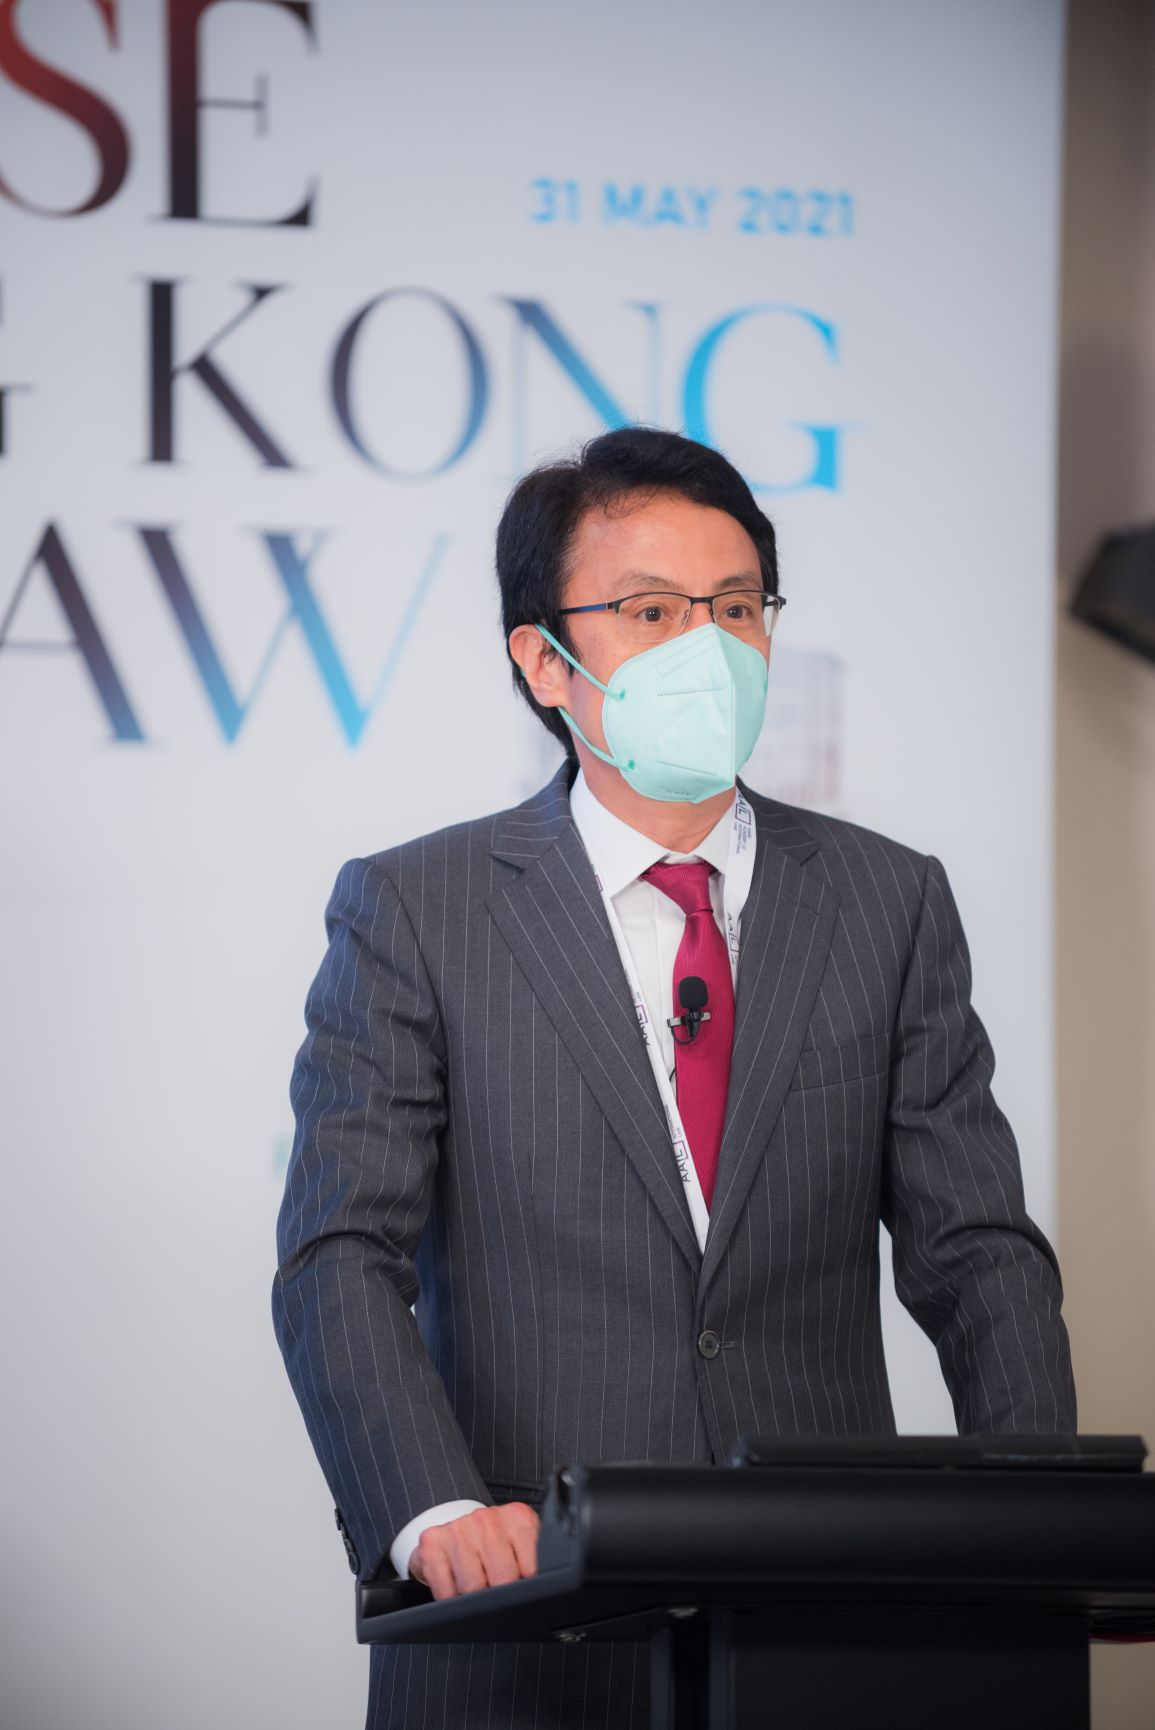 伍兆榮律師為亞洲國際法律研究院主辦的「為何選用香港法律」網上研討會擔任小組討論主持